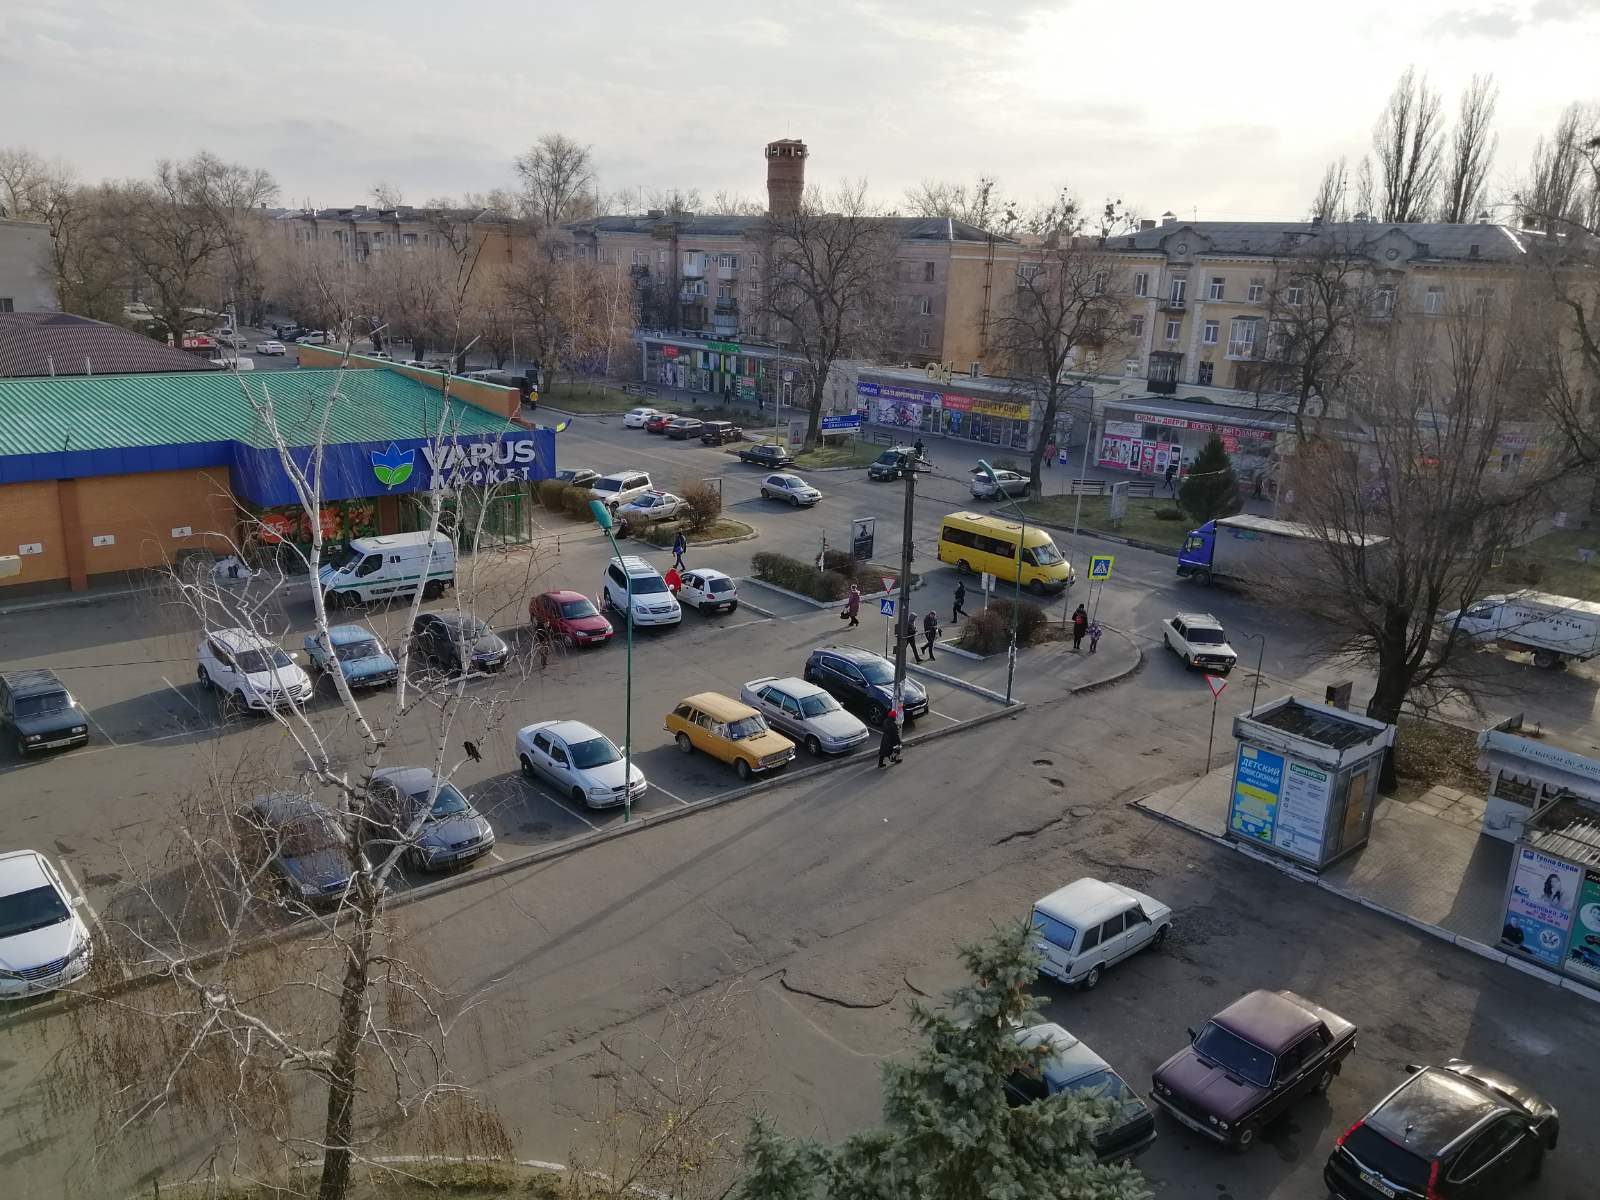 26 ноября, утром охранник супермаркета «Варус», который находится на ул. Сучкова в Новомосковске, поднял тревогу. Новости Днепра